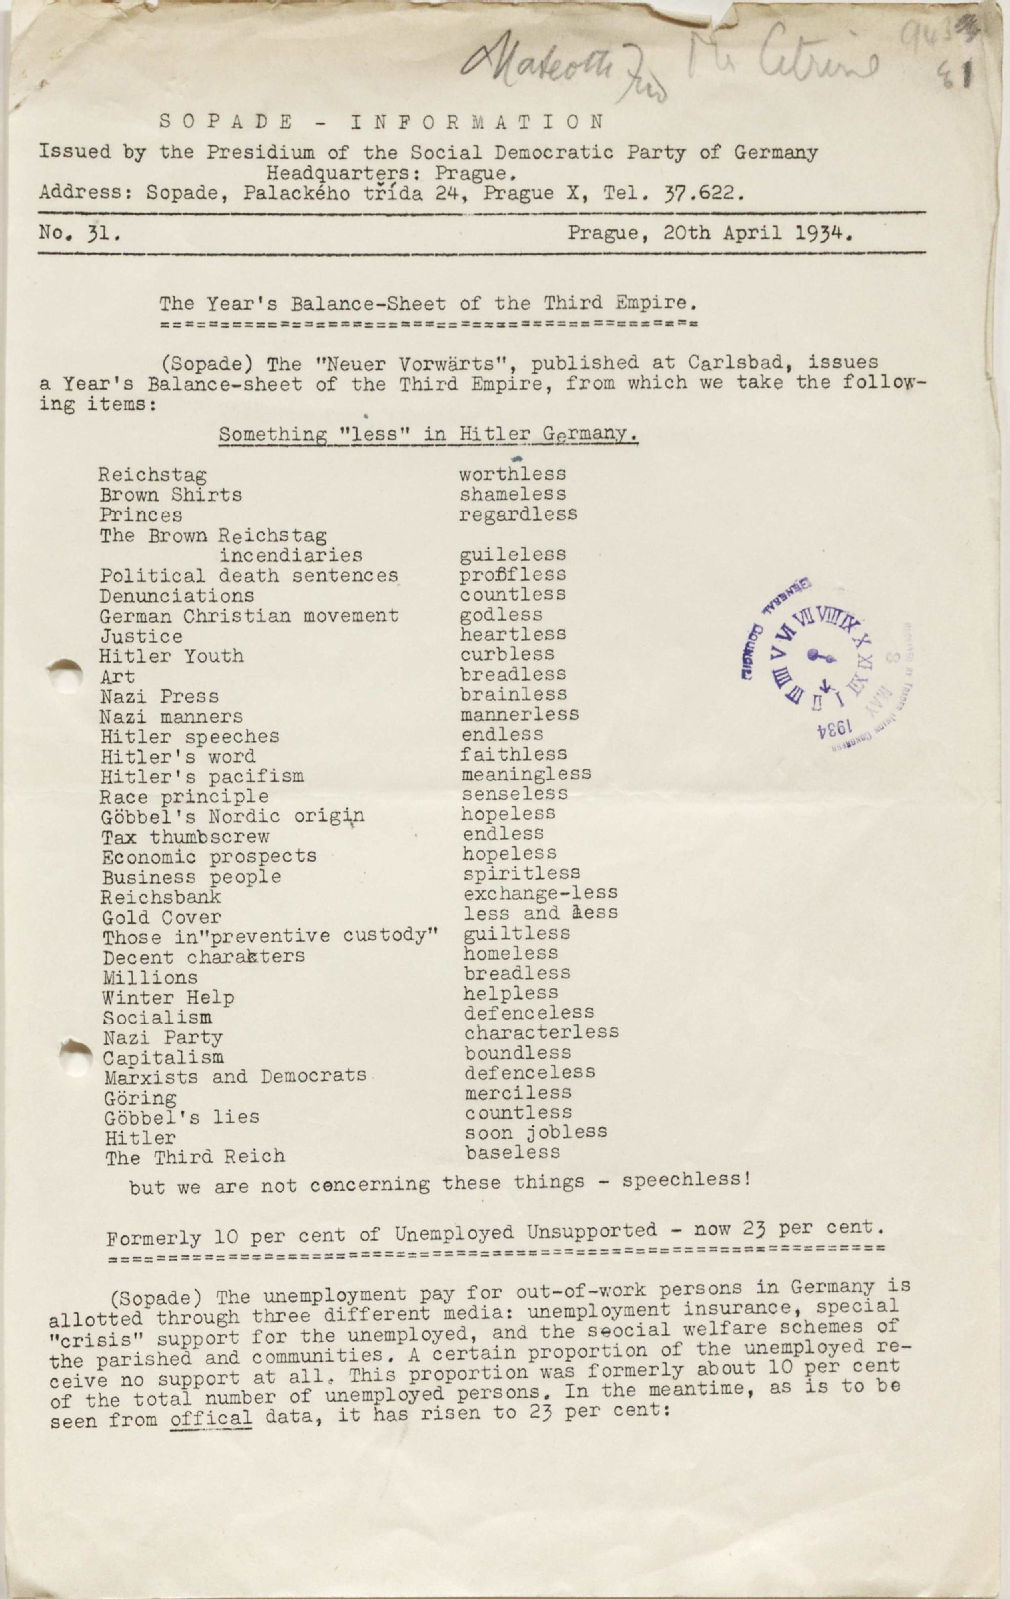 Sopade-Information, no. 31, 1934